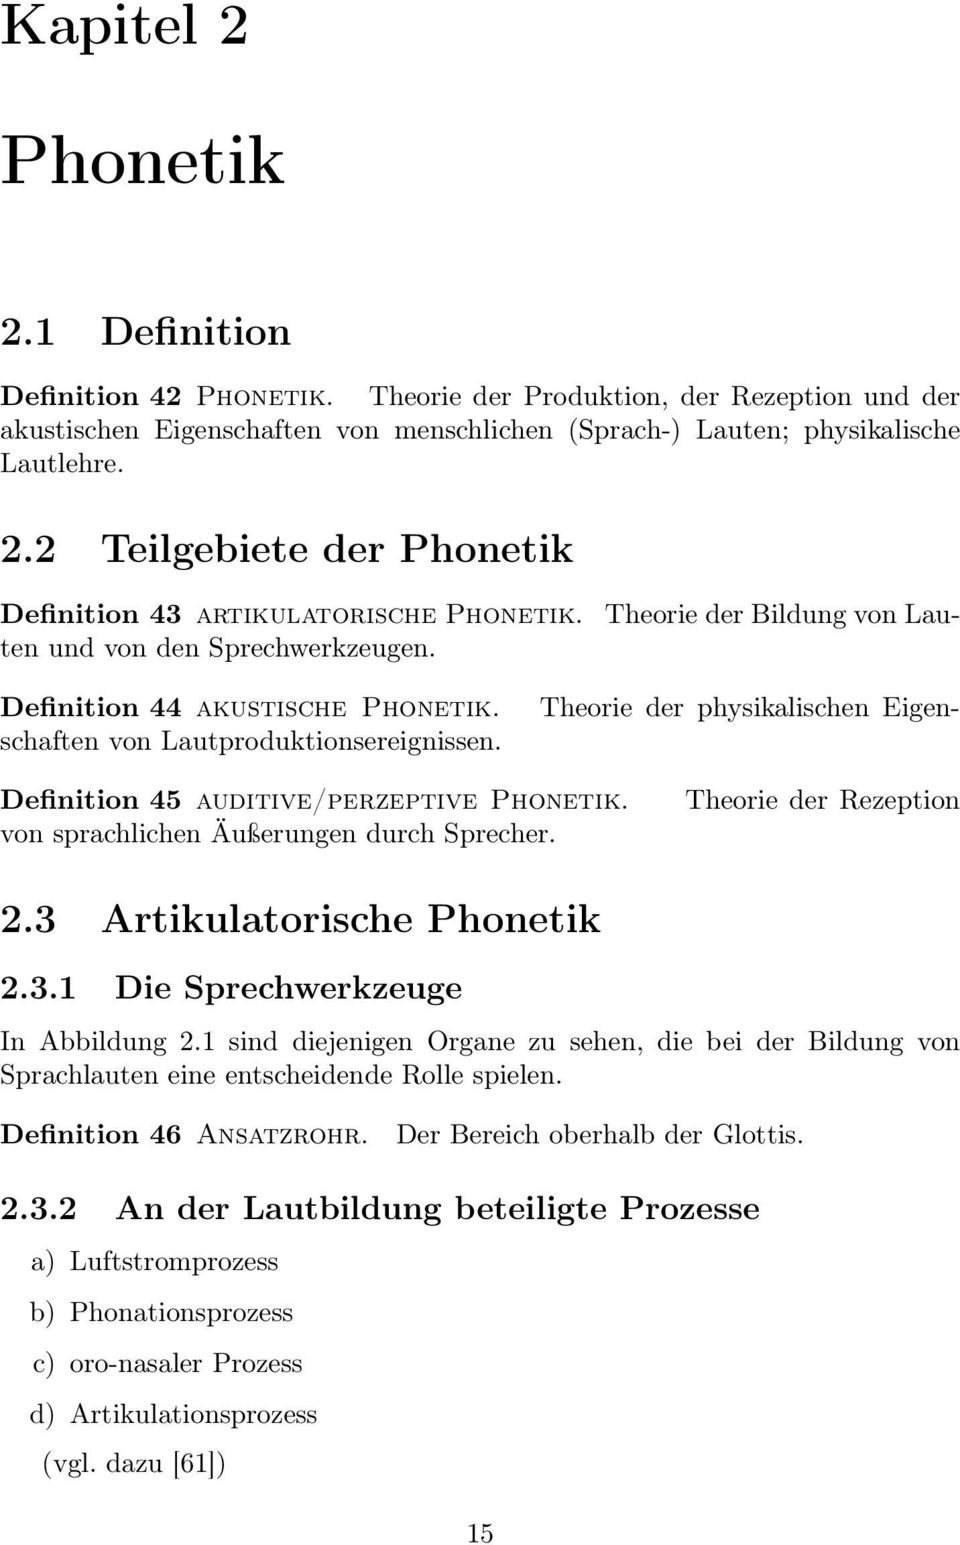 von sprachlichen Äußerungen durch Sprecher. Theorie der Rezeption 2.3 Artikulatorische Phonetik 2.3.1 Die Sprechwerkzeuge In Abbildung 2.